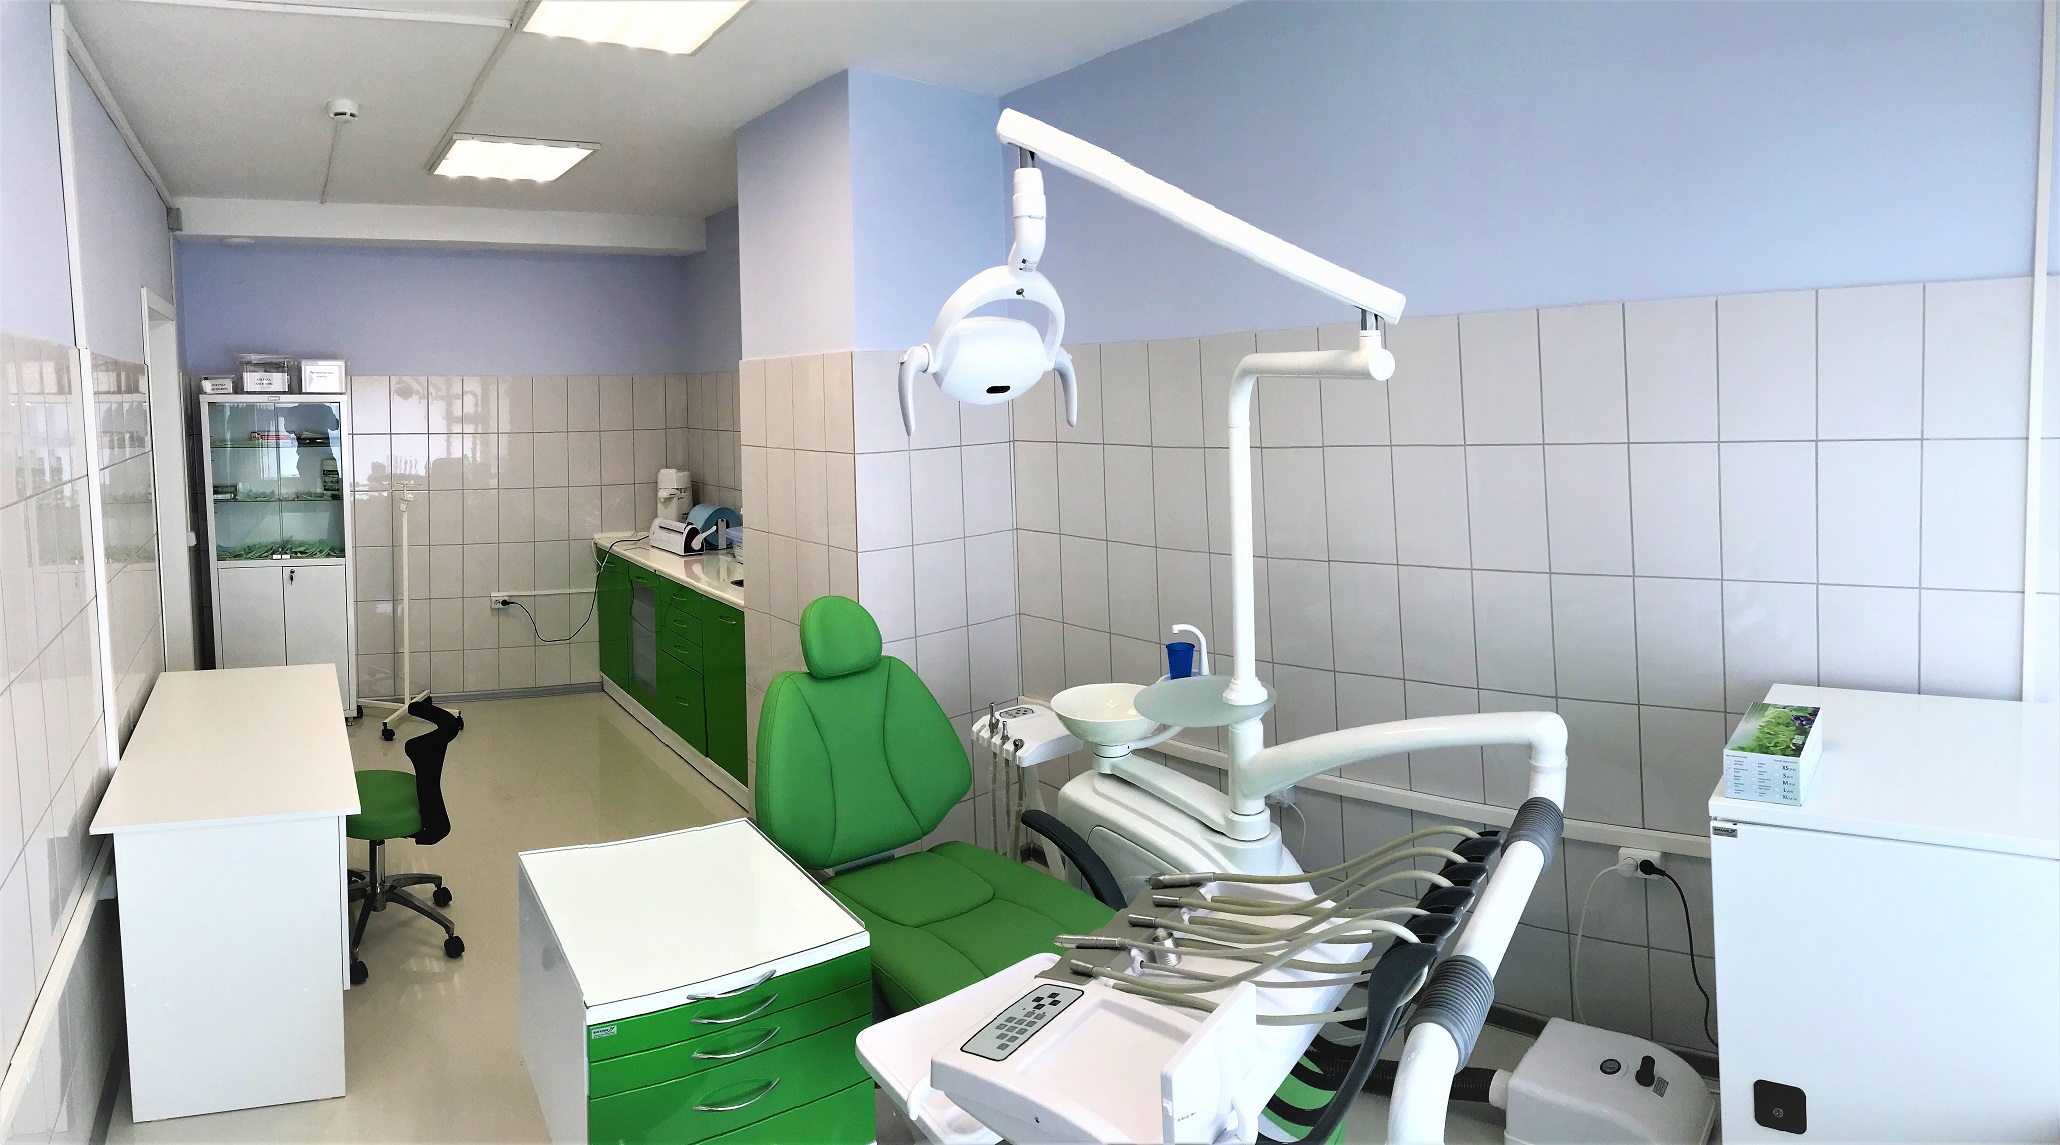 Хирургический кабинет фото